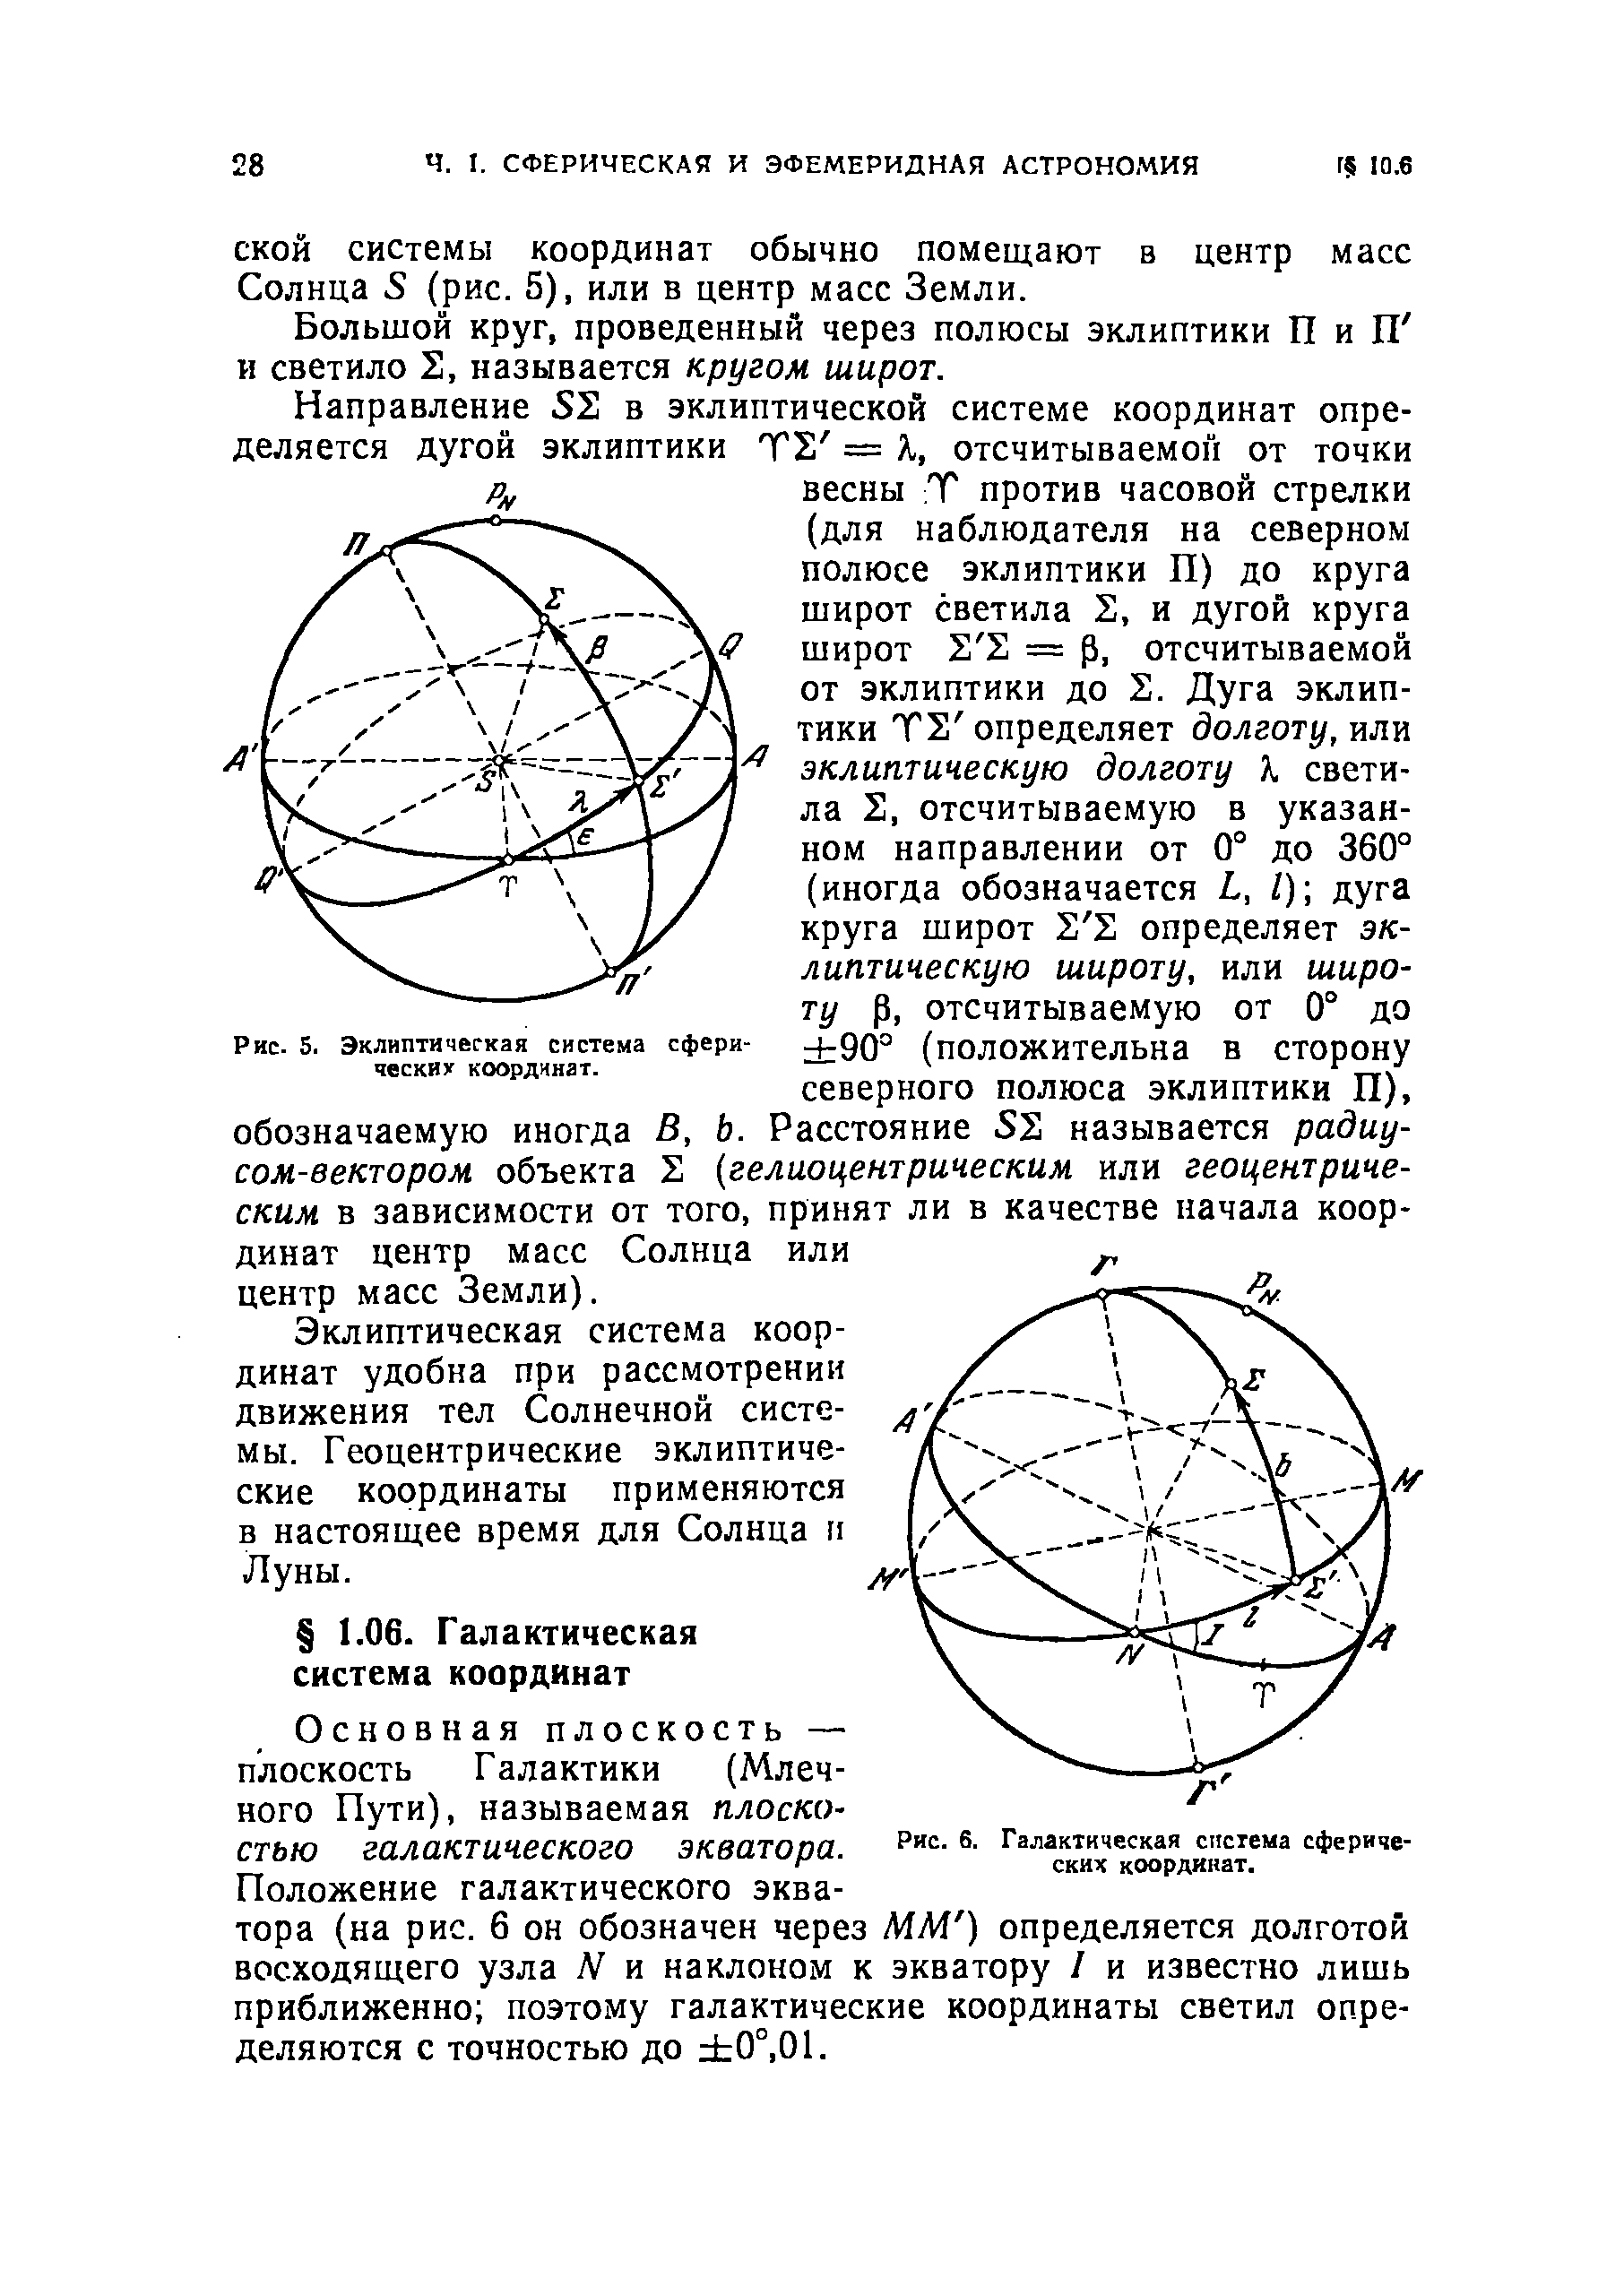 Рис. 6. Галактическая система сферических координат.
